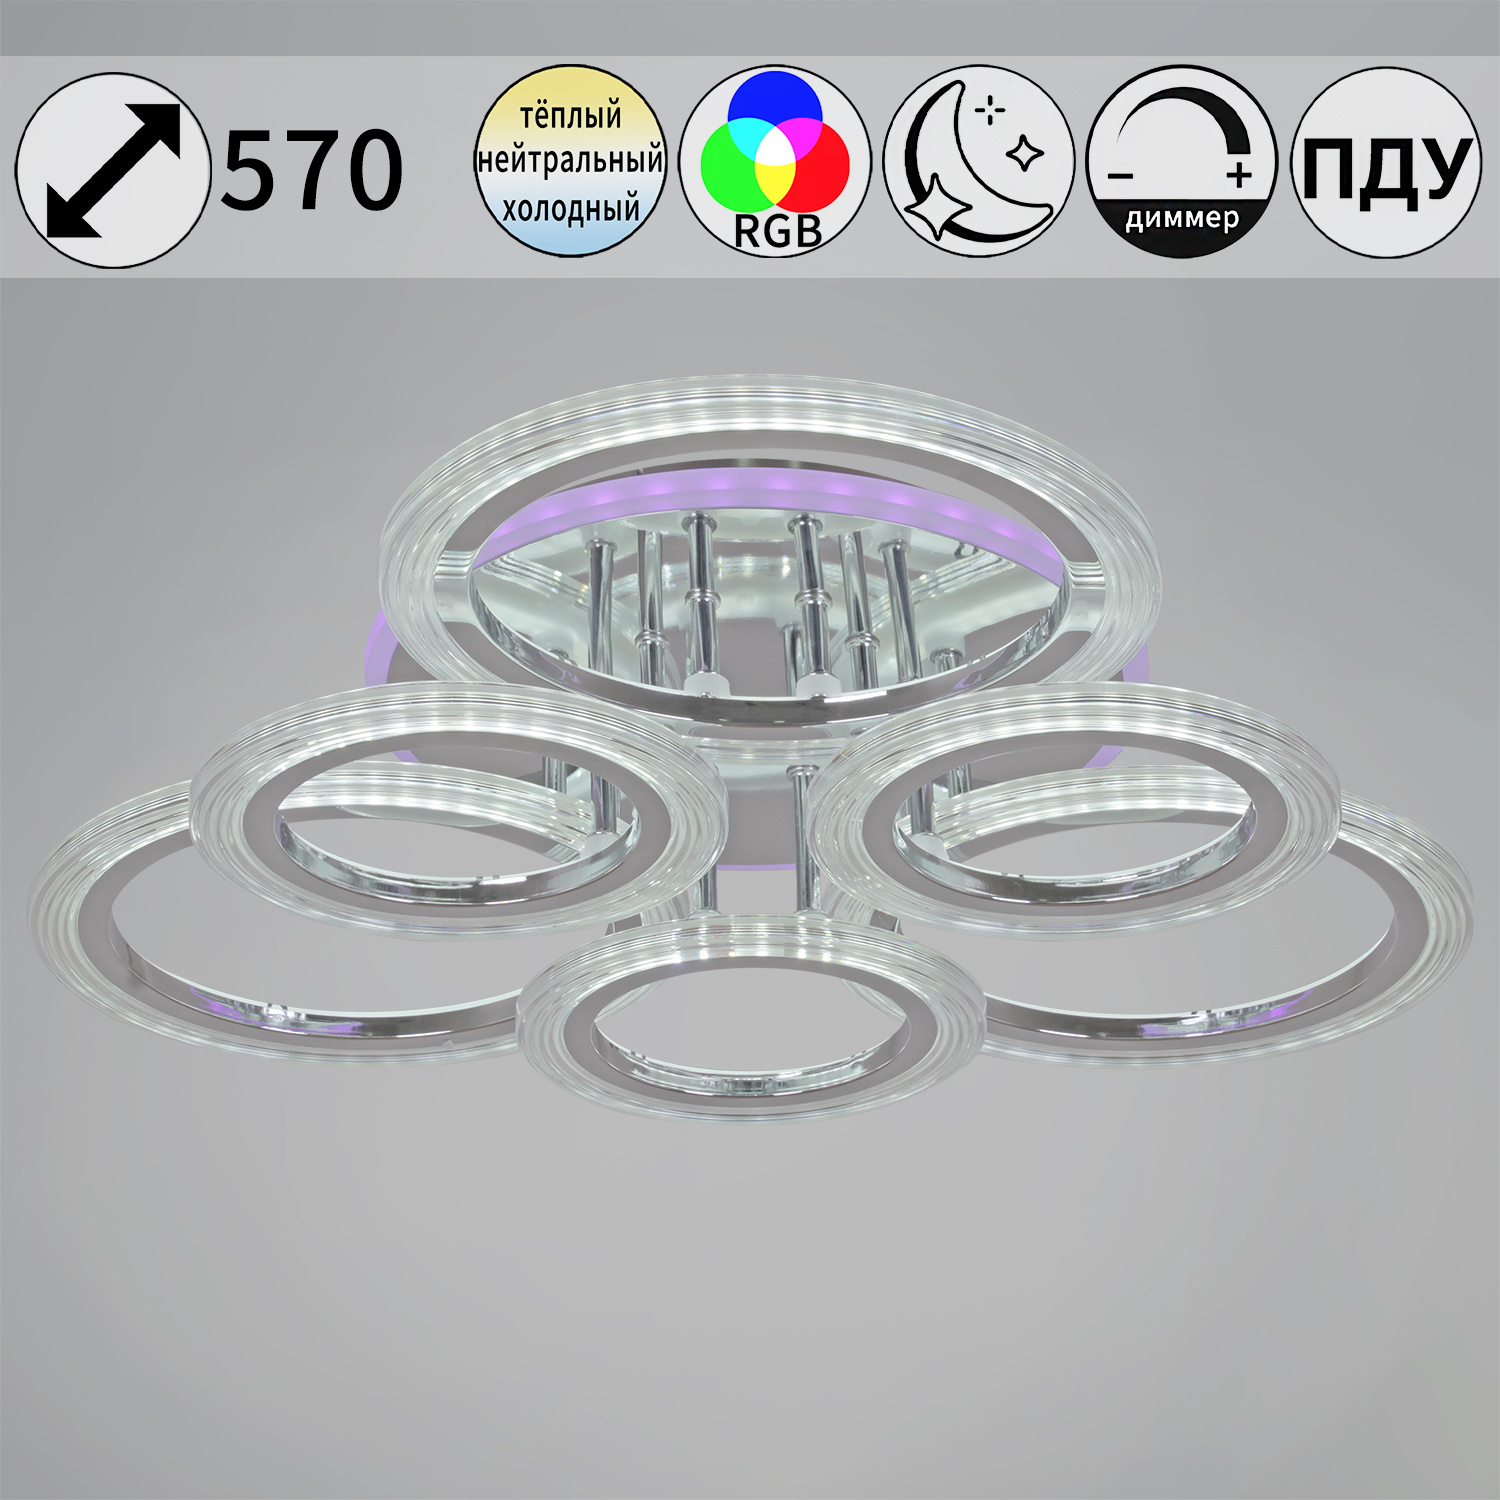 09812-3.3-3+3D CR (RGB) светильник потолочный